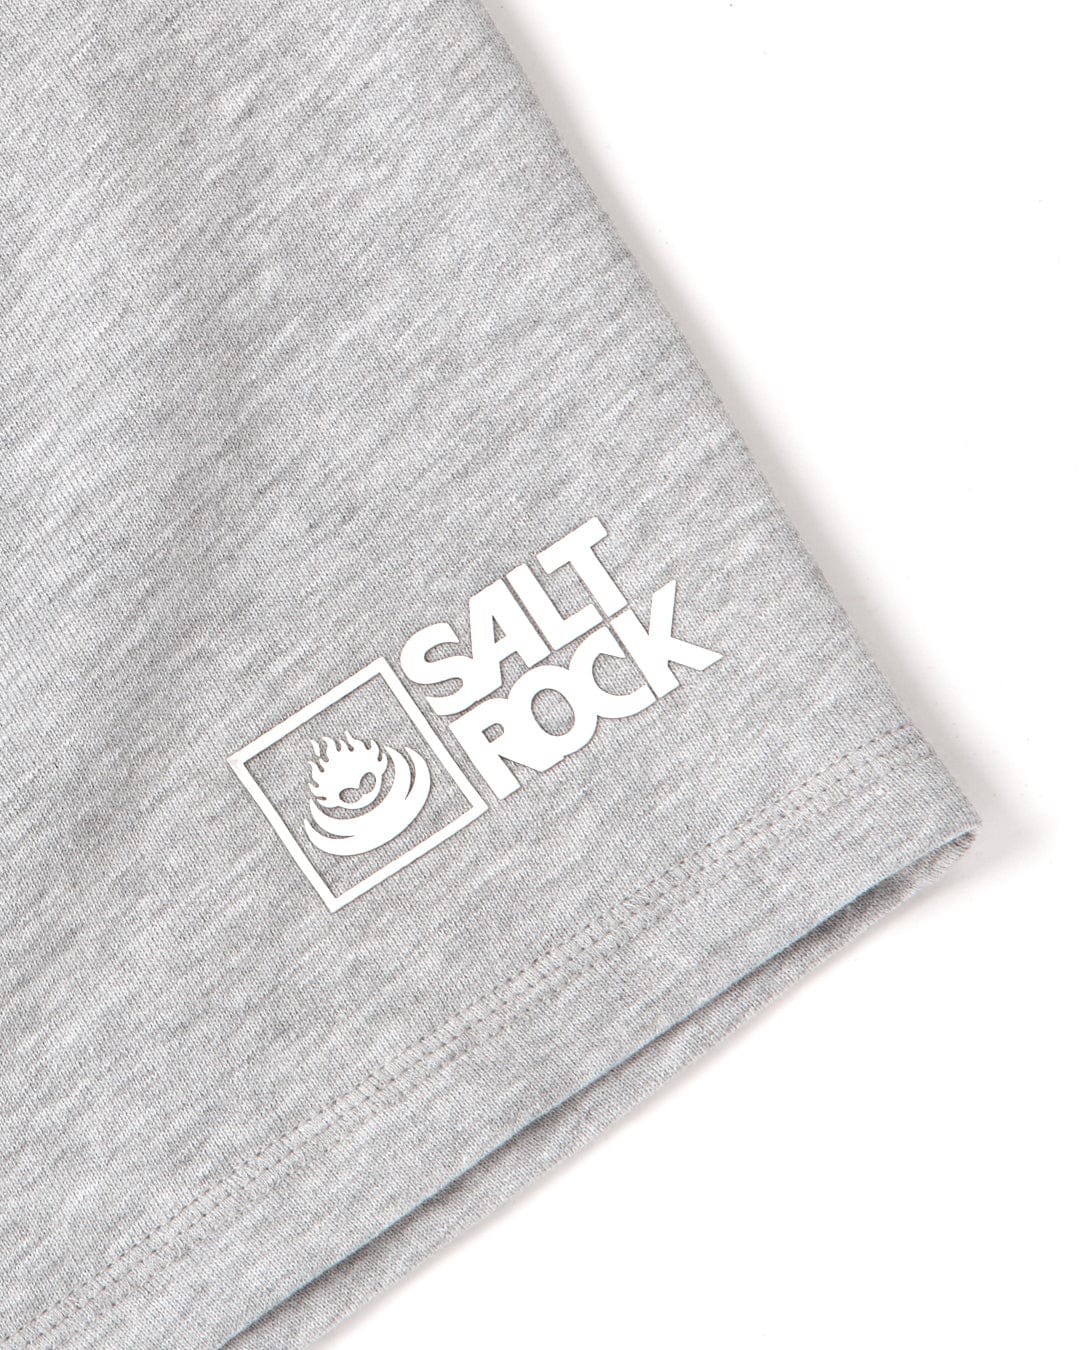 The Saltrock branding logo on a Saltrock Original - Mens Short - Grey t-shirt.